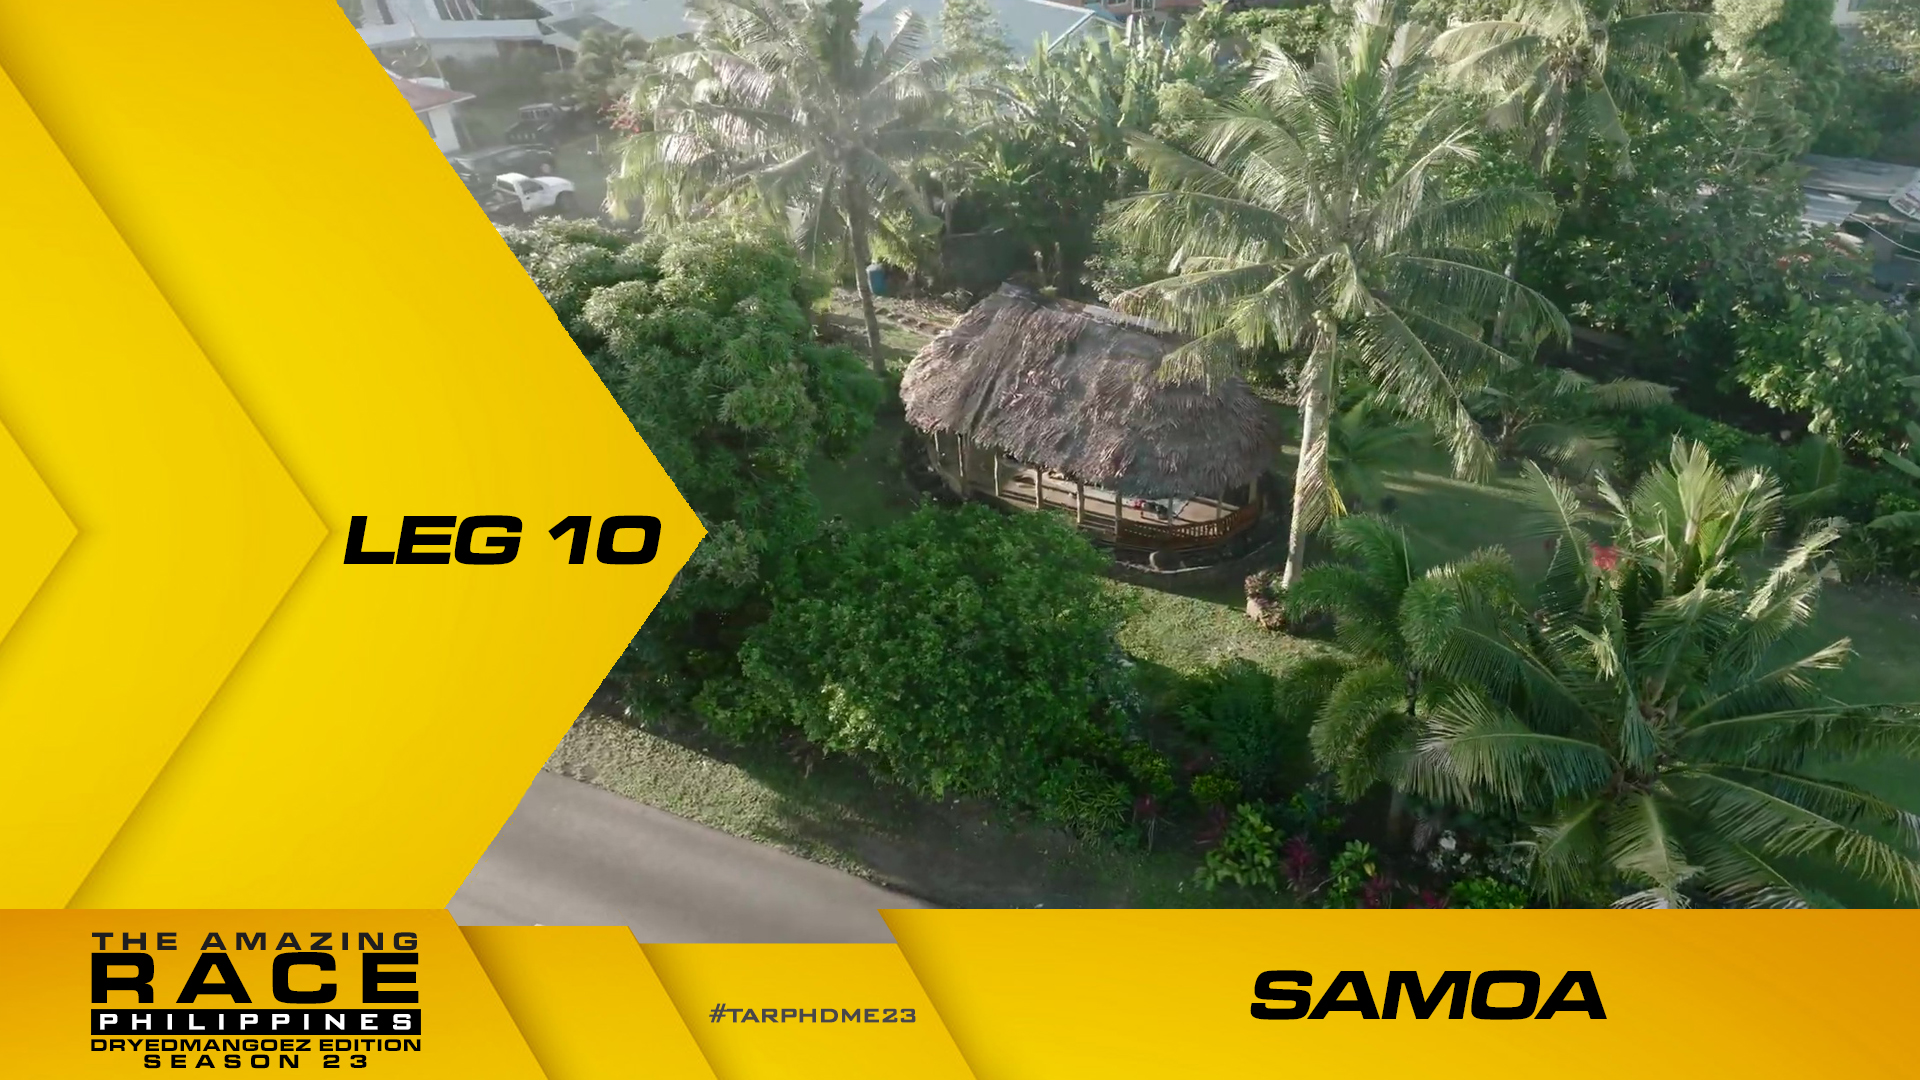 The Amazing Race Philippines: DryedMangoez Edition 23, Leg 10 – Samoa